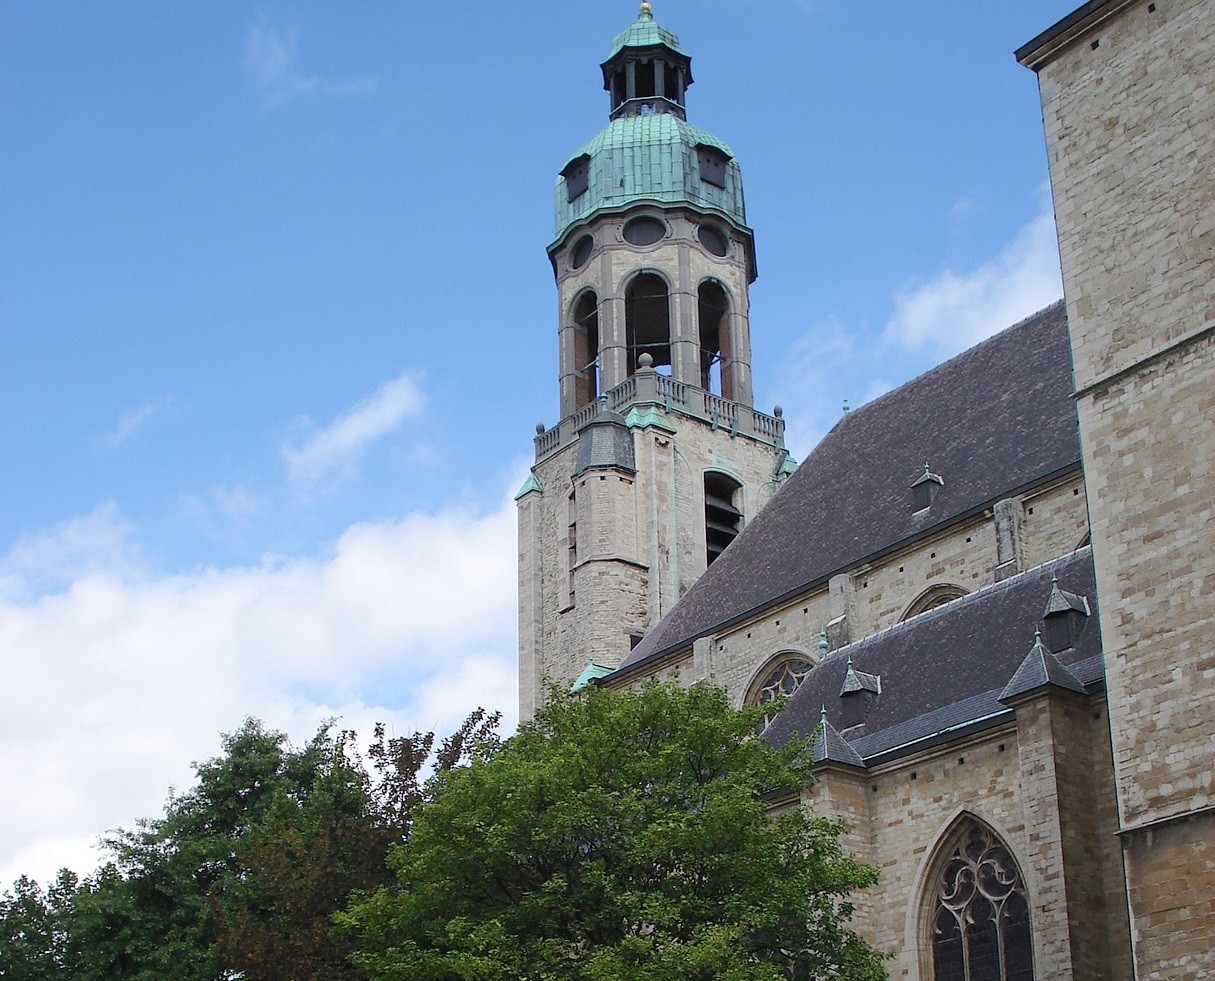 Restauratie Antwerpse Sint-Andrieskerk begint in november